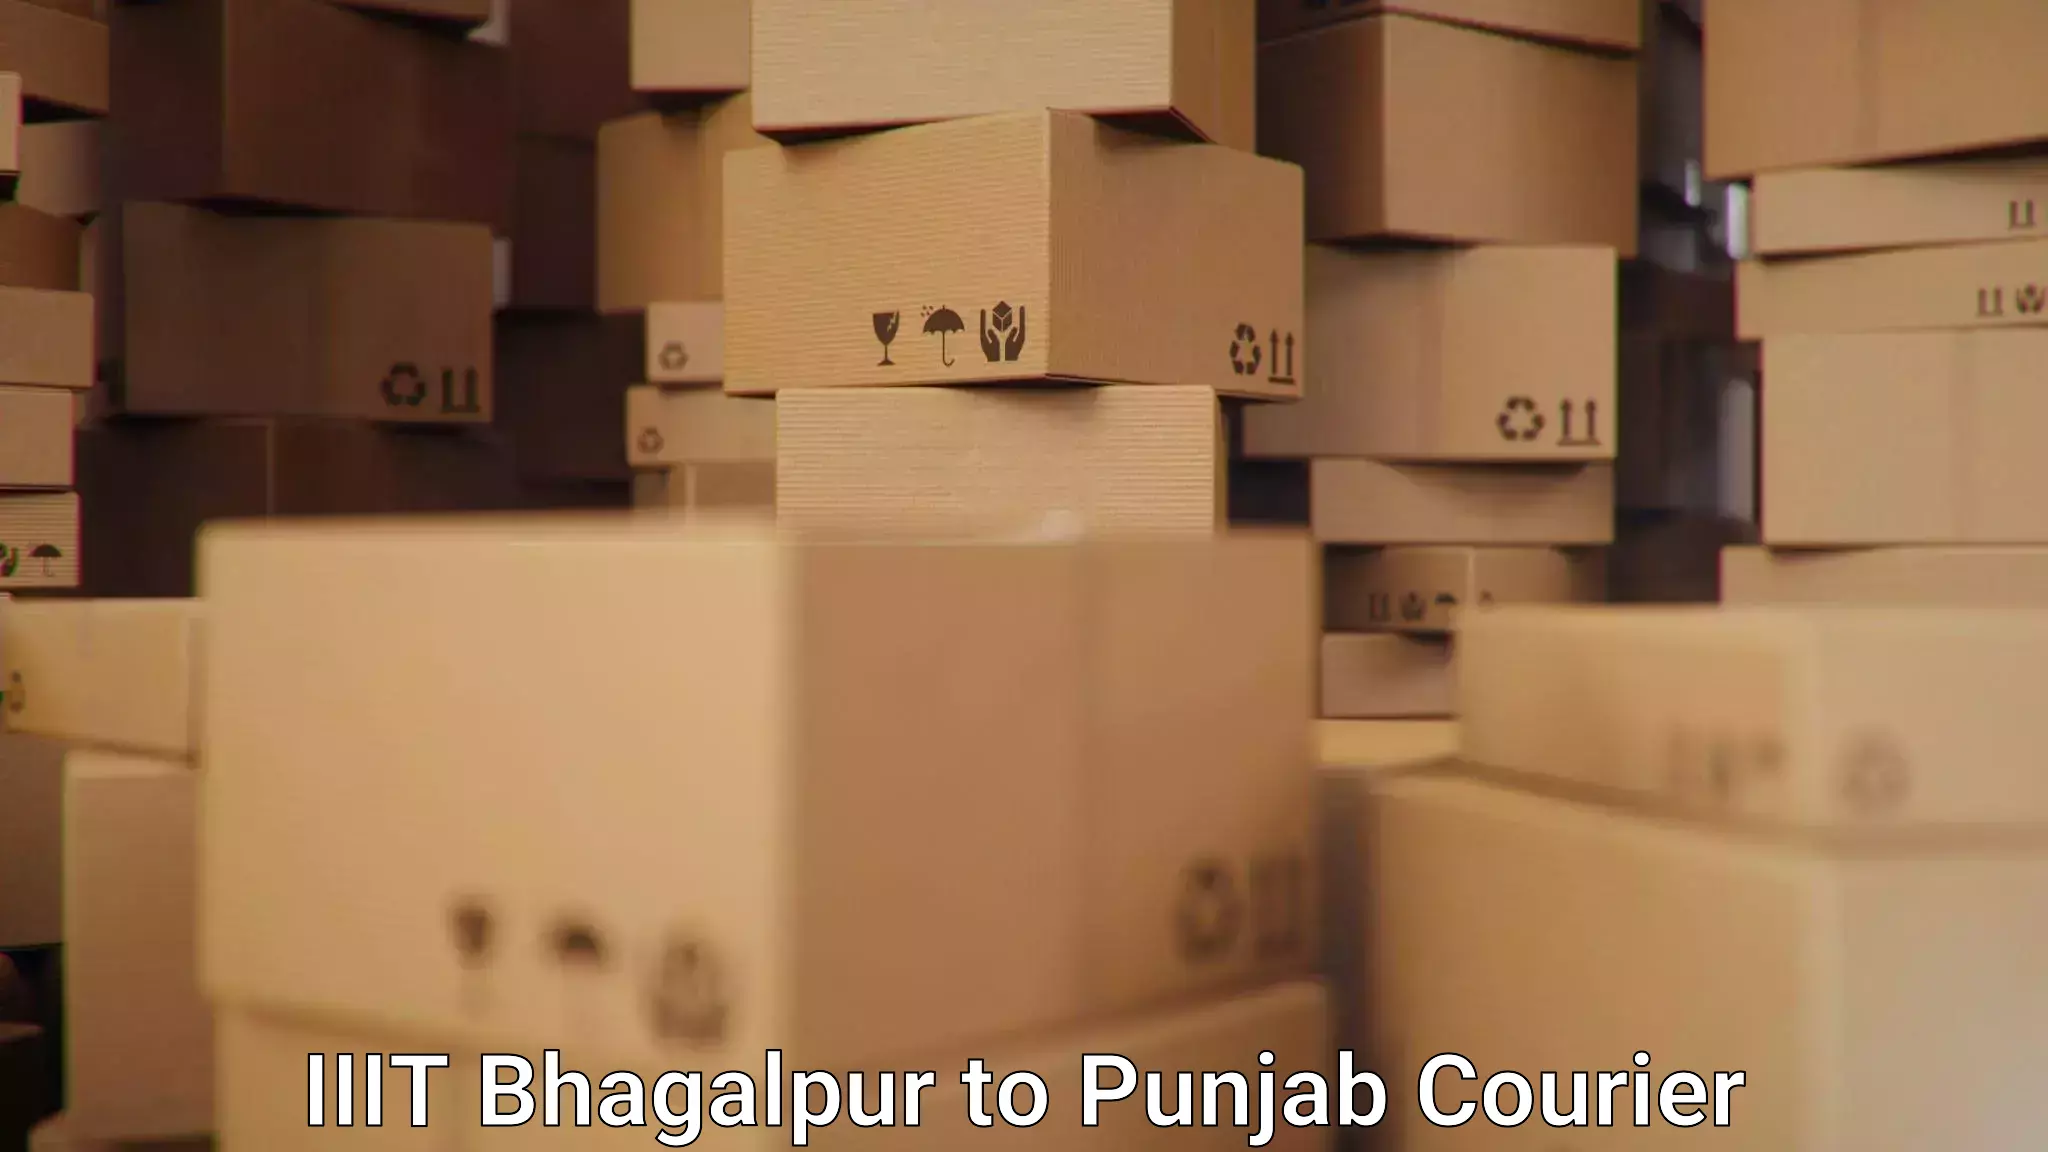 Rapid freight solutions IIIT Bhagalpur to Abohar